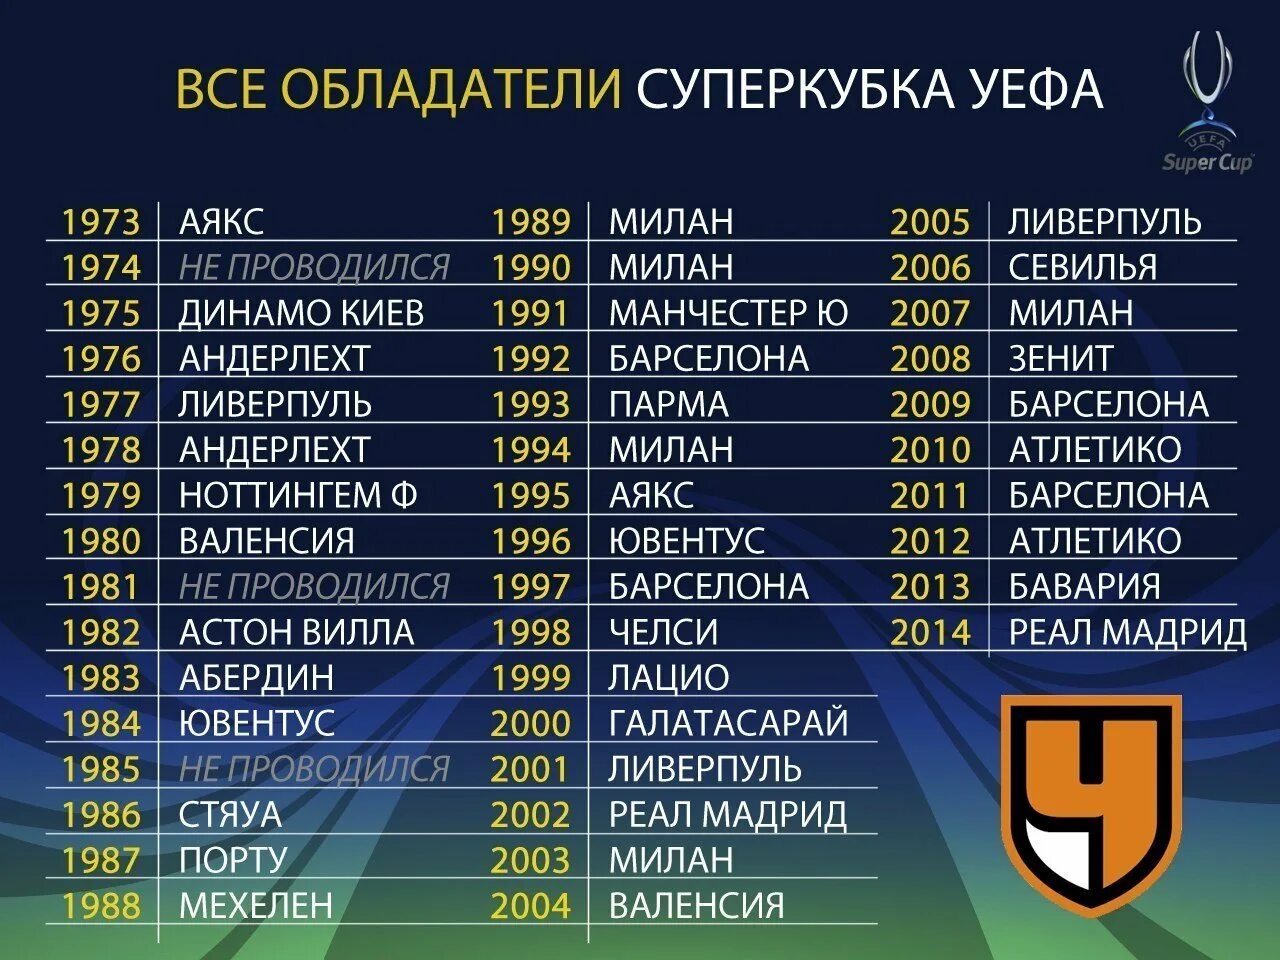 Список чемпионов футбол. Победители Суперкубка УЕФА по годам. Список чемпионов по футболу за всю историю. Список чемпионов Европы по футболу по годам.